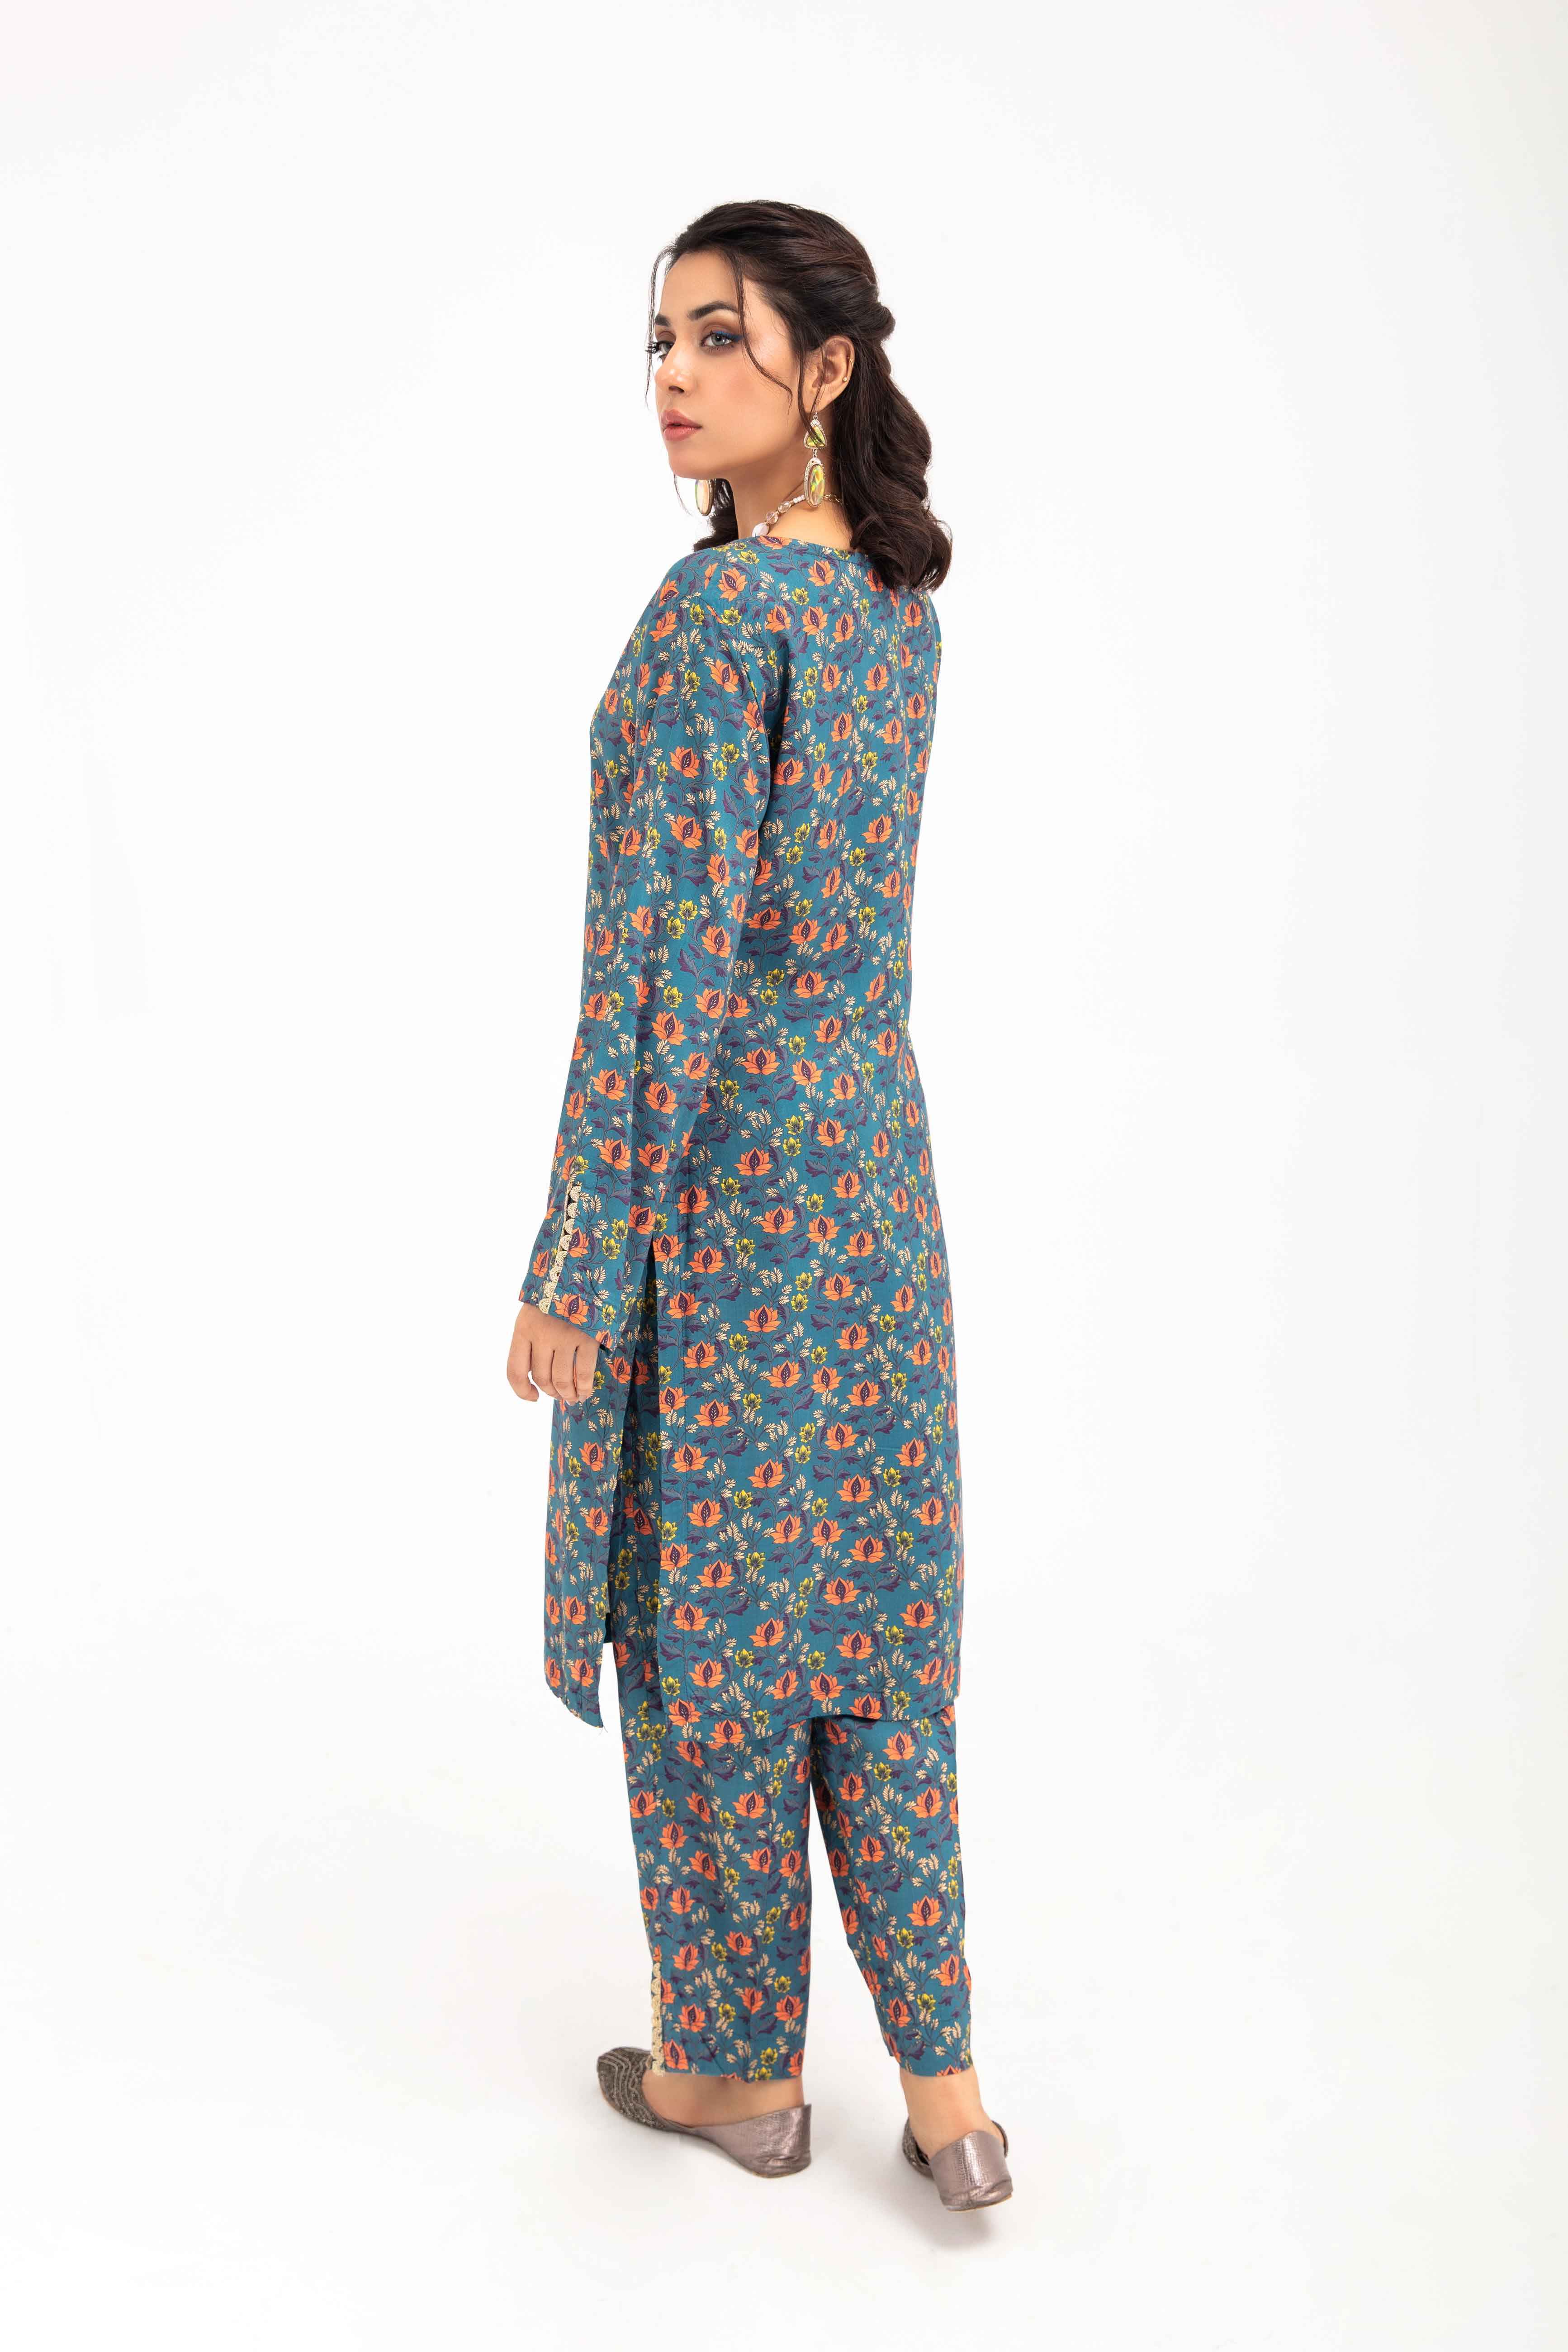 Desi Posh Floral Print on Print Linen Suit MAL04 DesiP 